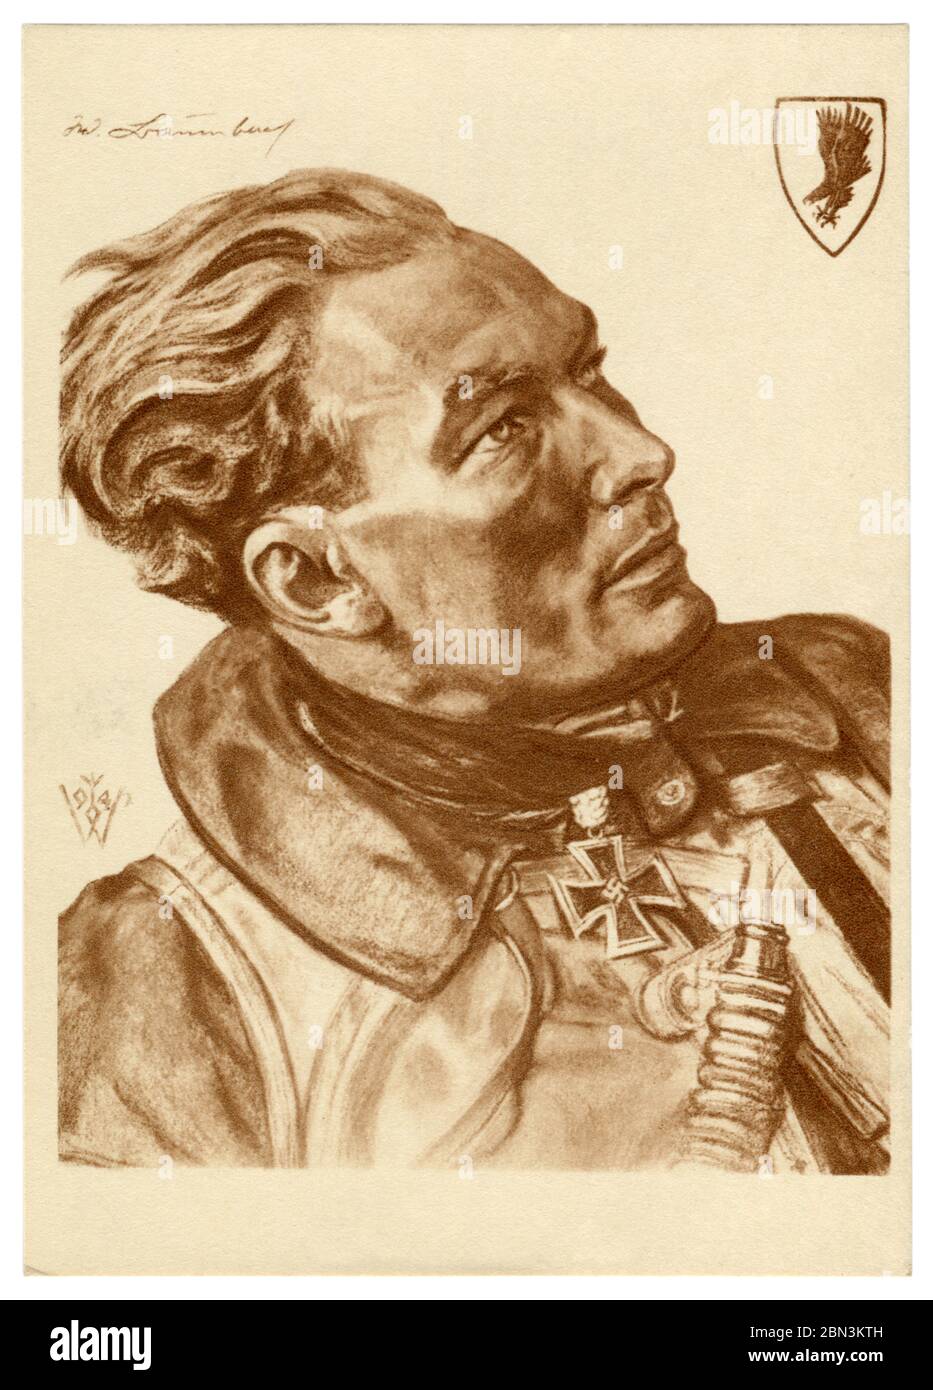 Cartolina storica tedesca: Ritratto di un pilota maggiore Werner Baumbach con una croce di ferro con foglie di quercia, artista Wolfgang Willrich, Germania, anni '40 Foto Stock